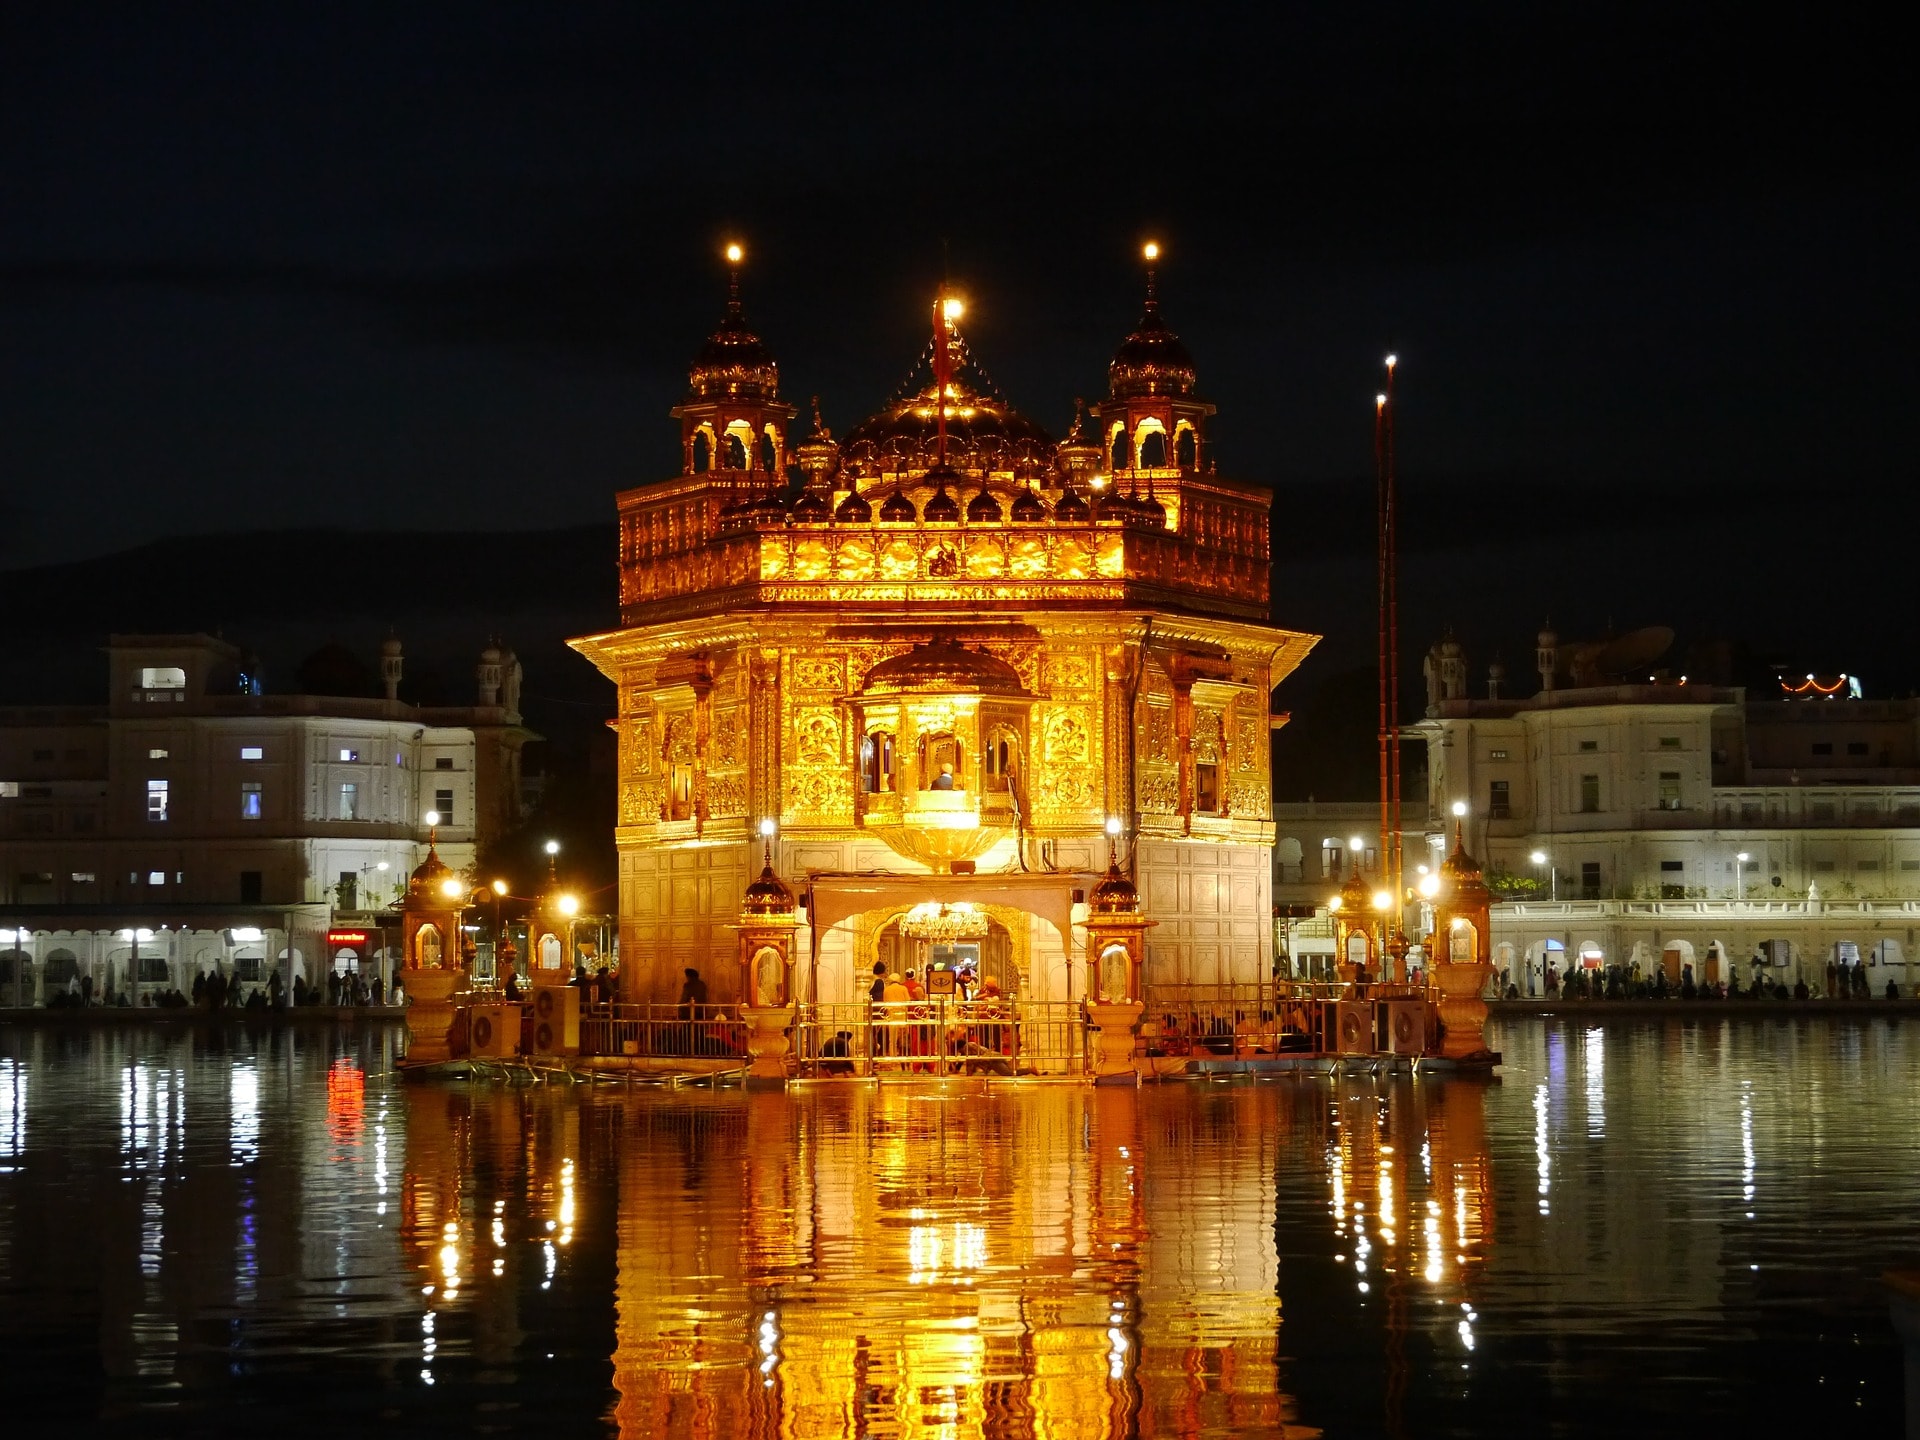 Amritsar at night